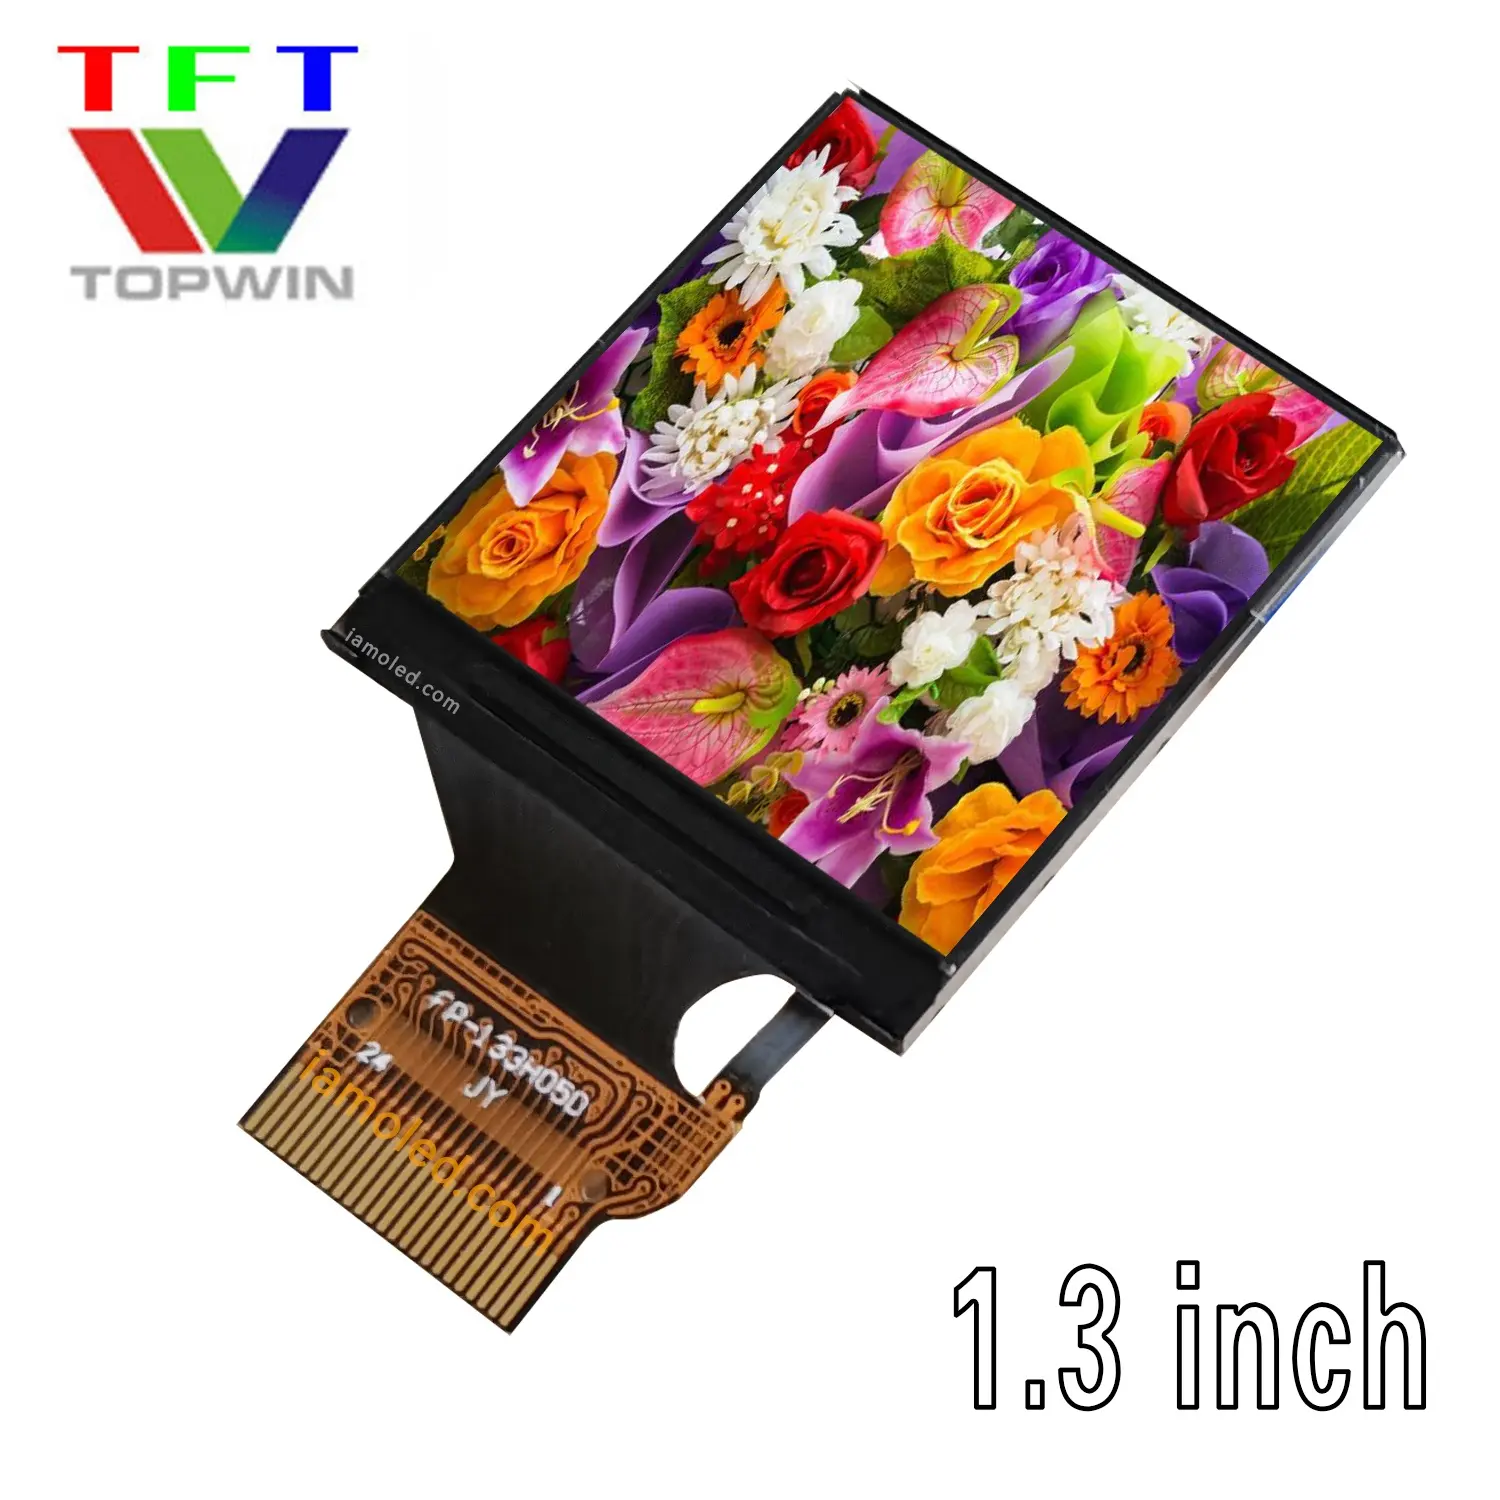 Topwin небольшой TFT-LCD дисплей 1,3 дюймов 240x240 пикселей многоцветный TW133TIF05 Тип коннектора 4-проводной SPI параллельный интерфейс